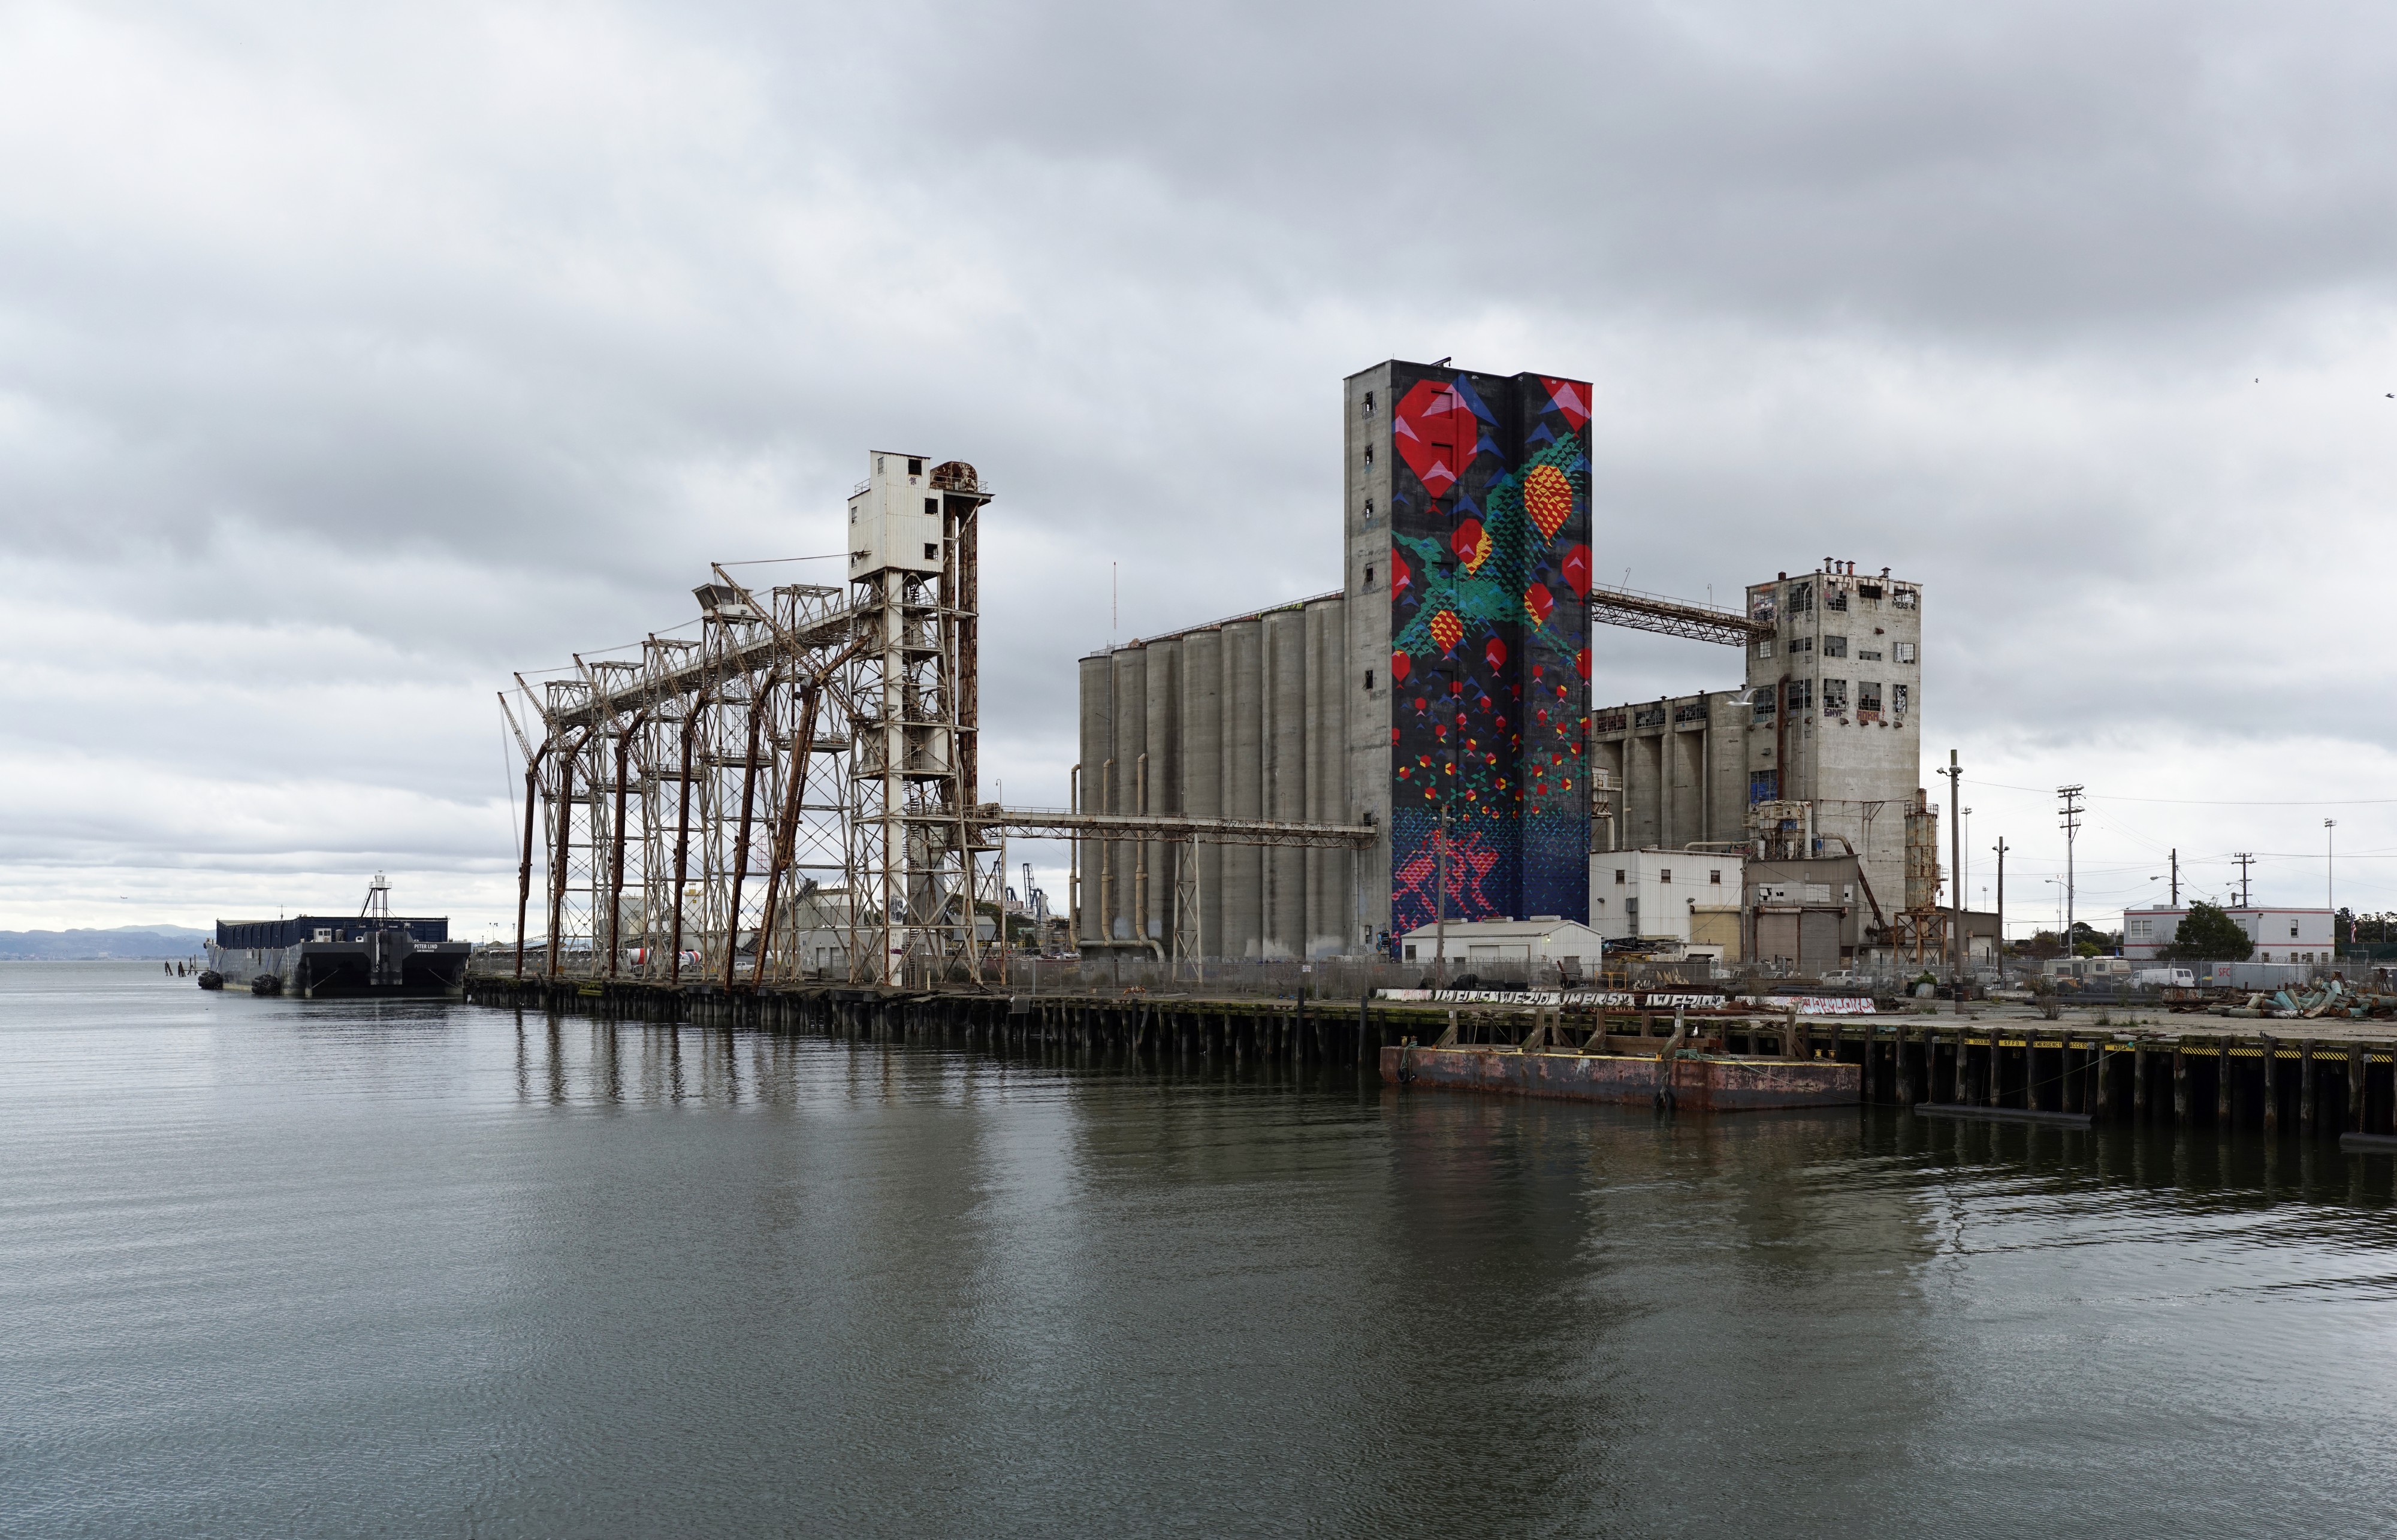 Abandoned grain silos at Pier 90, San Francisco